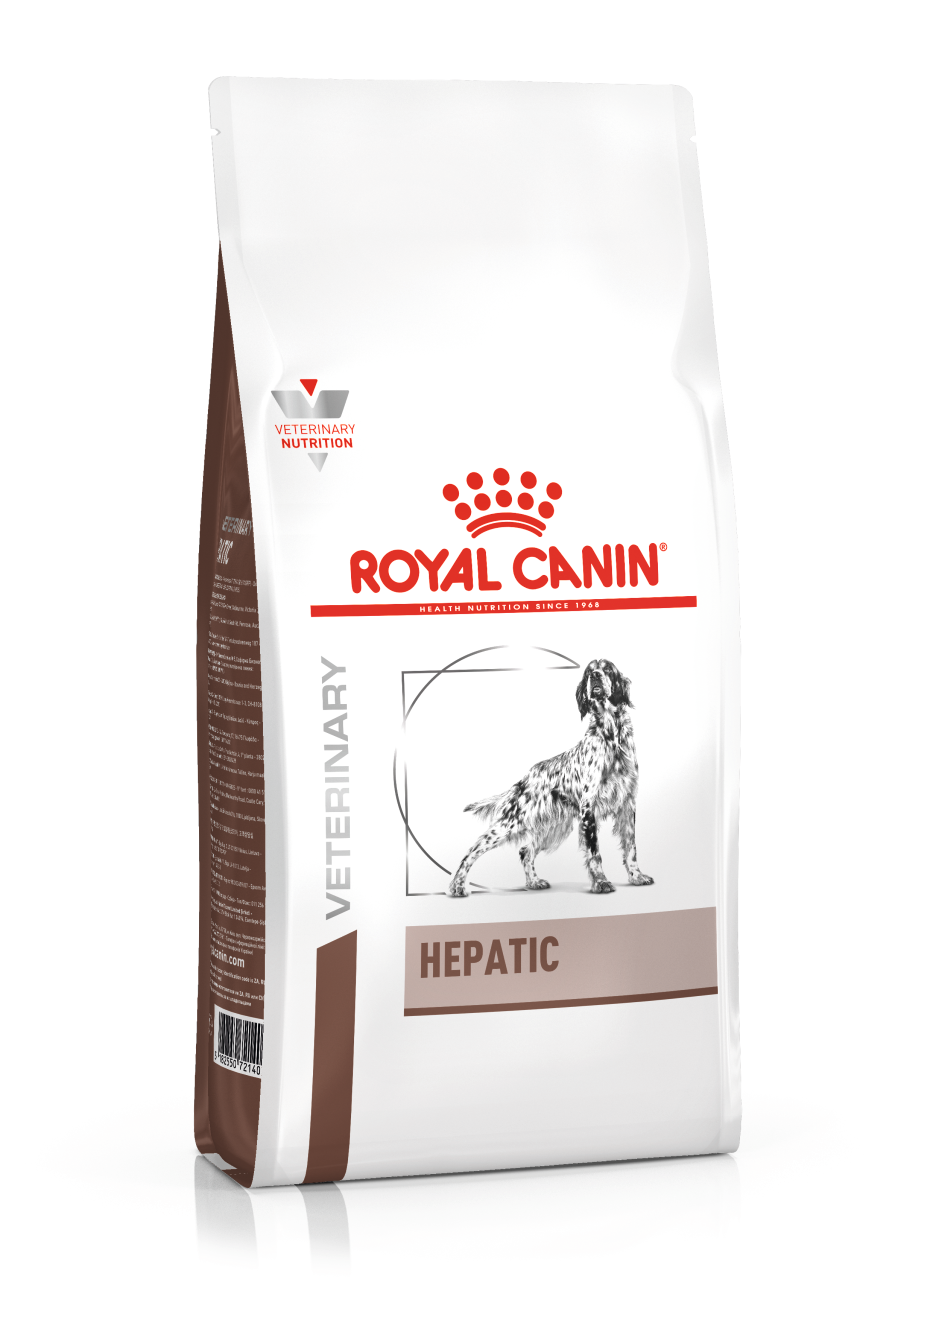 Royal Canin Hepatic hond 1 x 7 kg (nieuw gewicht!)